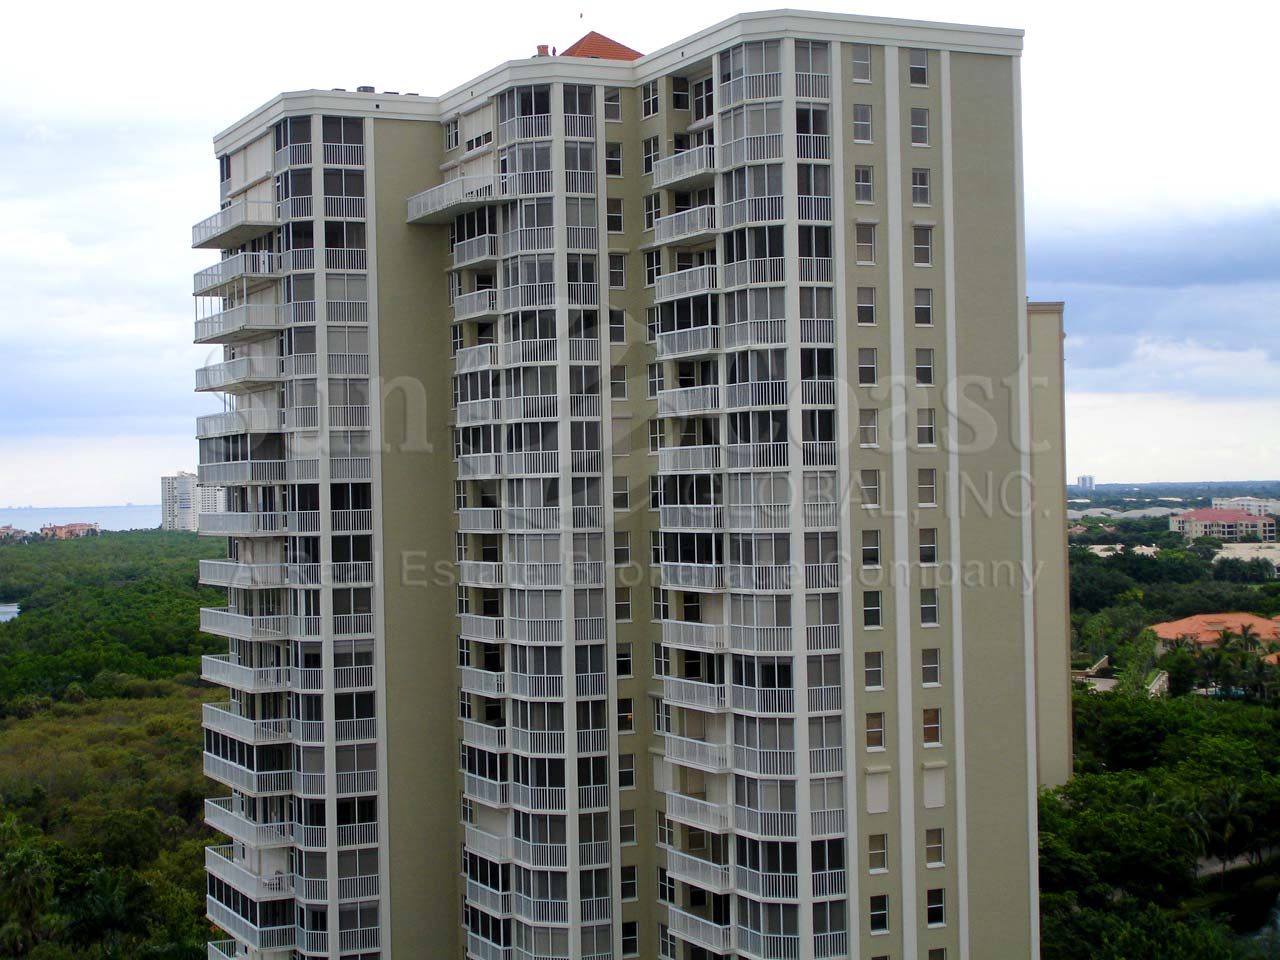 St Marissa Condominium Building